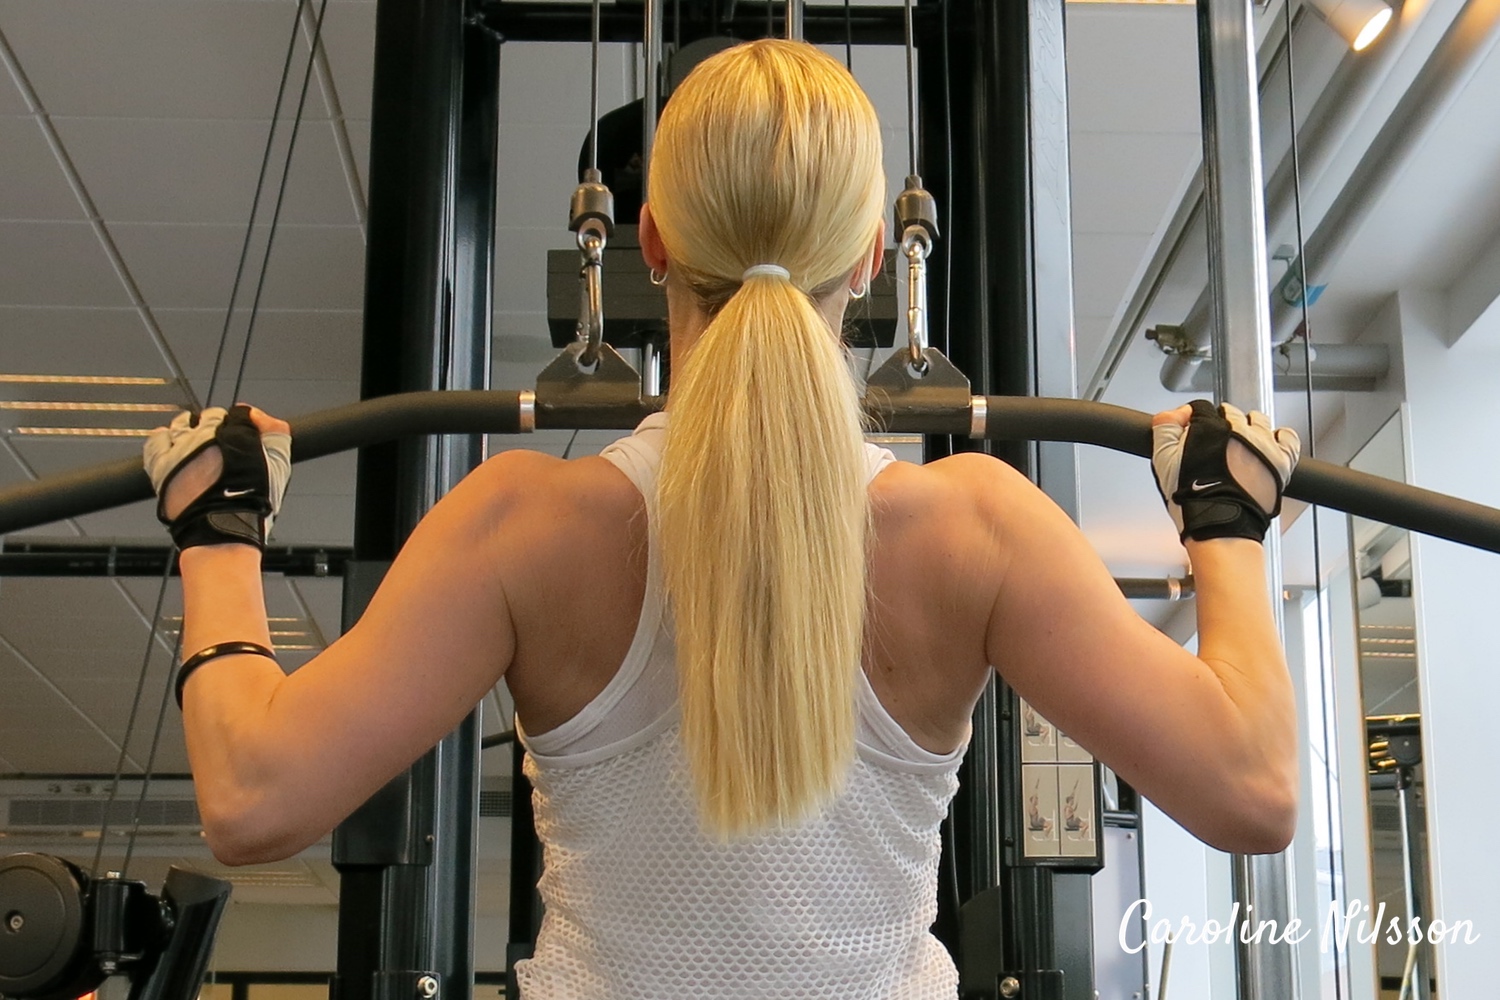 Övningen latsdrag är bra träning för ryggmusklerna